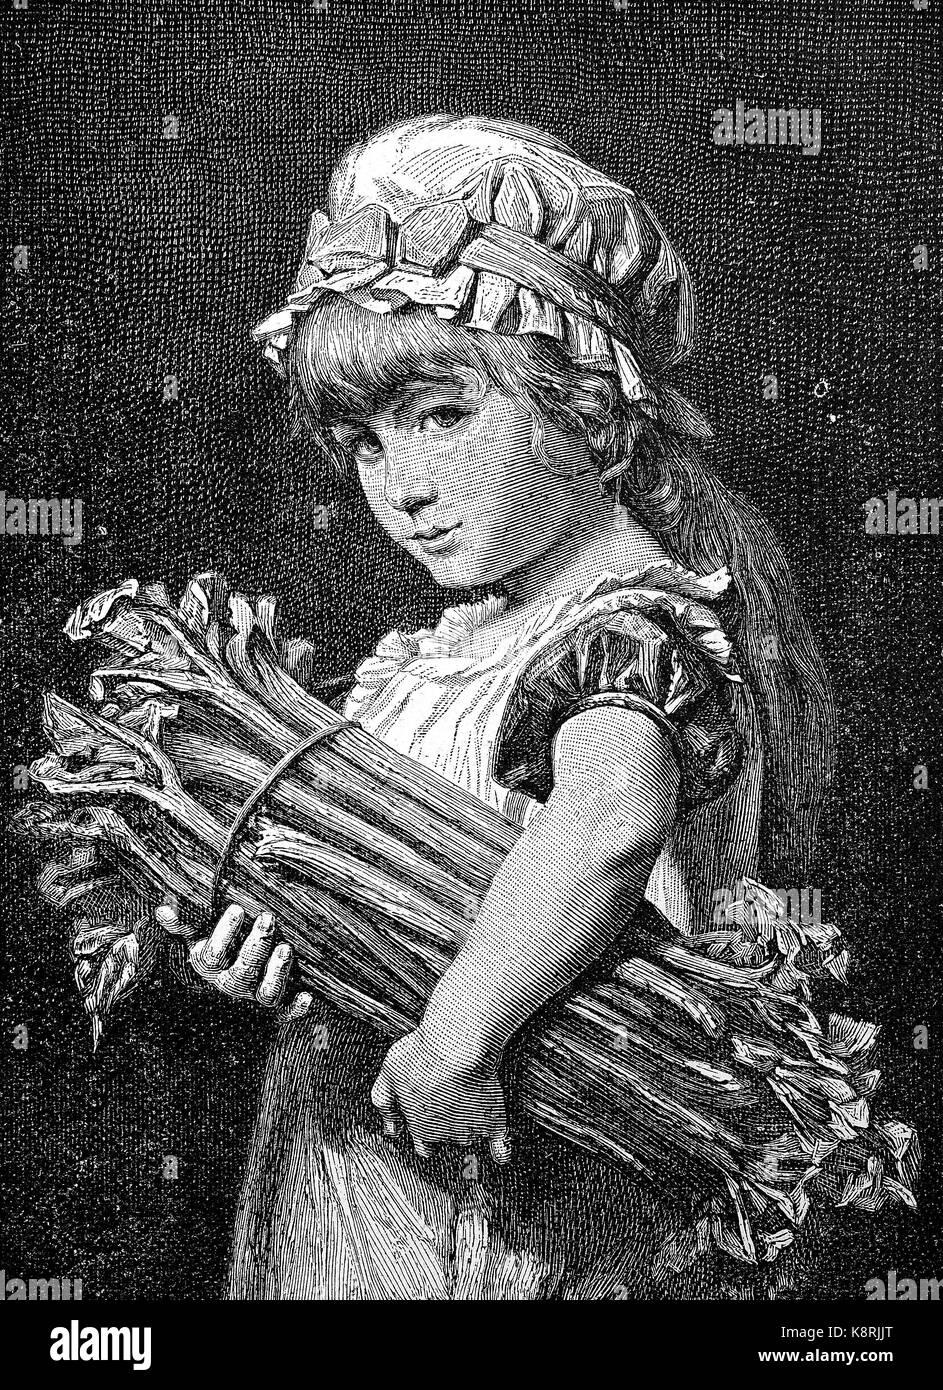 Fille avec un tas de bâtons de rhubarbe, Mädchen mit einem Bündel numérique Rhabarberstangen, amélioration de la reproduction d'une gravure sur bois, publié dans le 19e siècle Banque D'Images